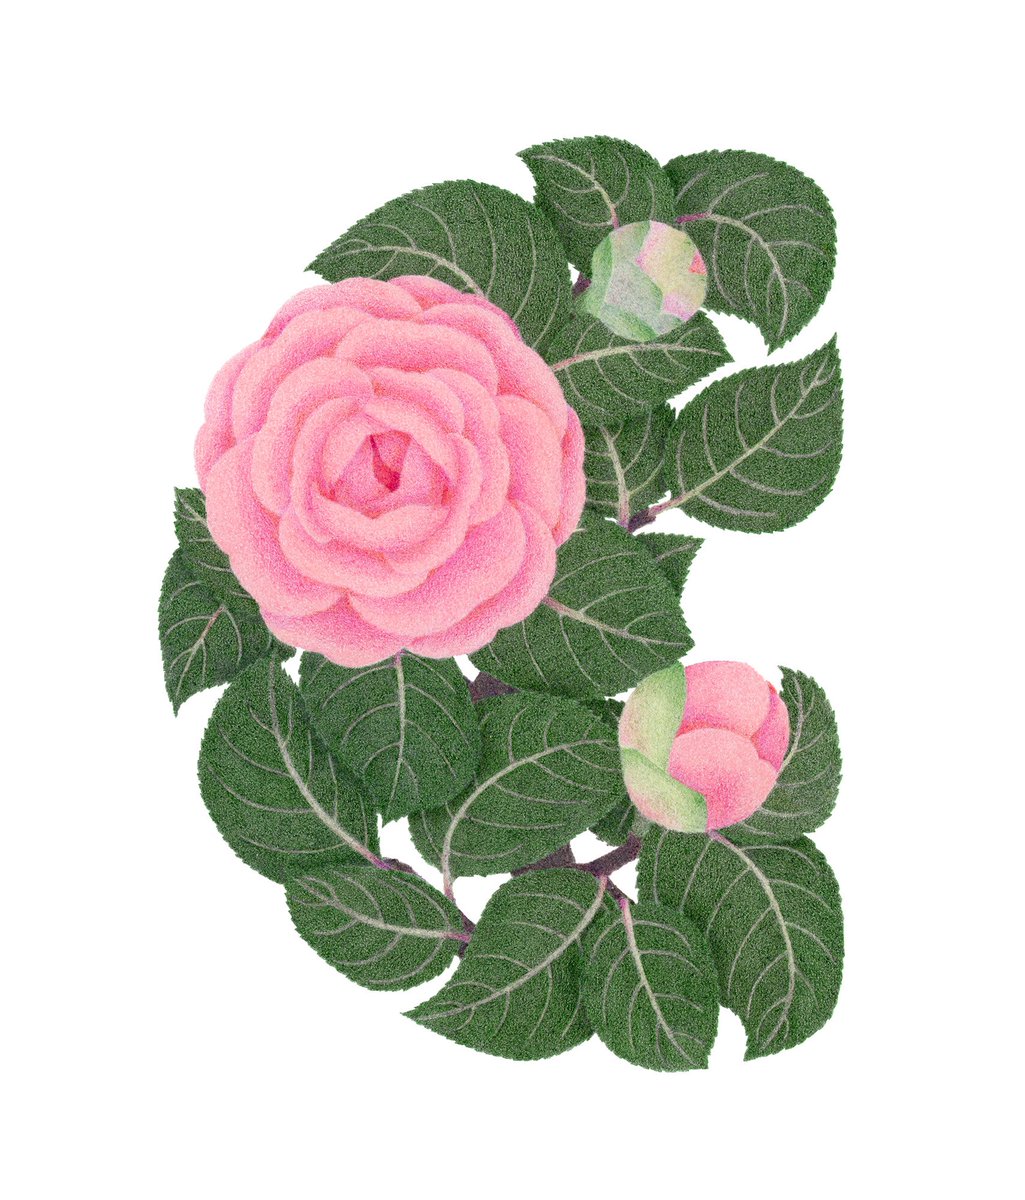 ツバキ「C -Camellia
(ツバキ)
#plant_alphabet 」|せいのちさとのイラスト